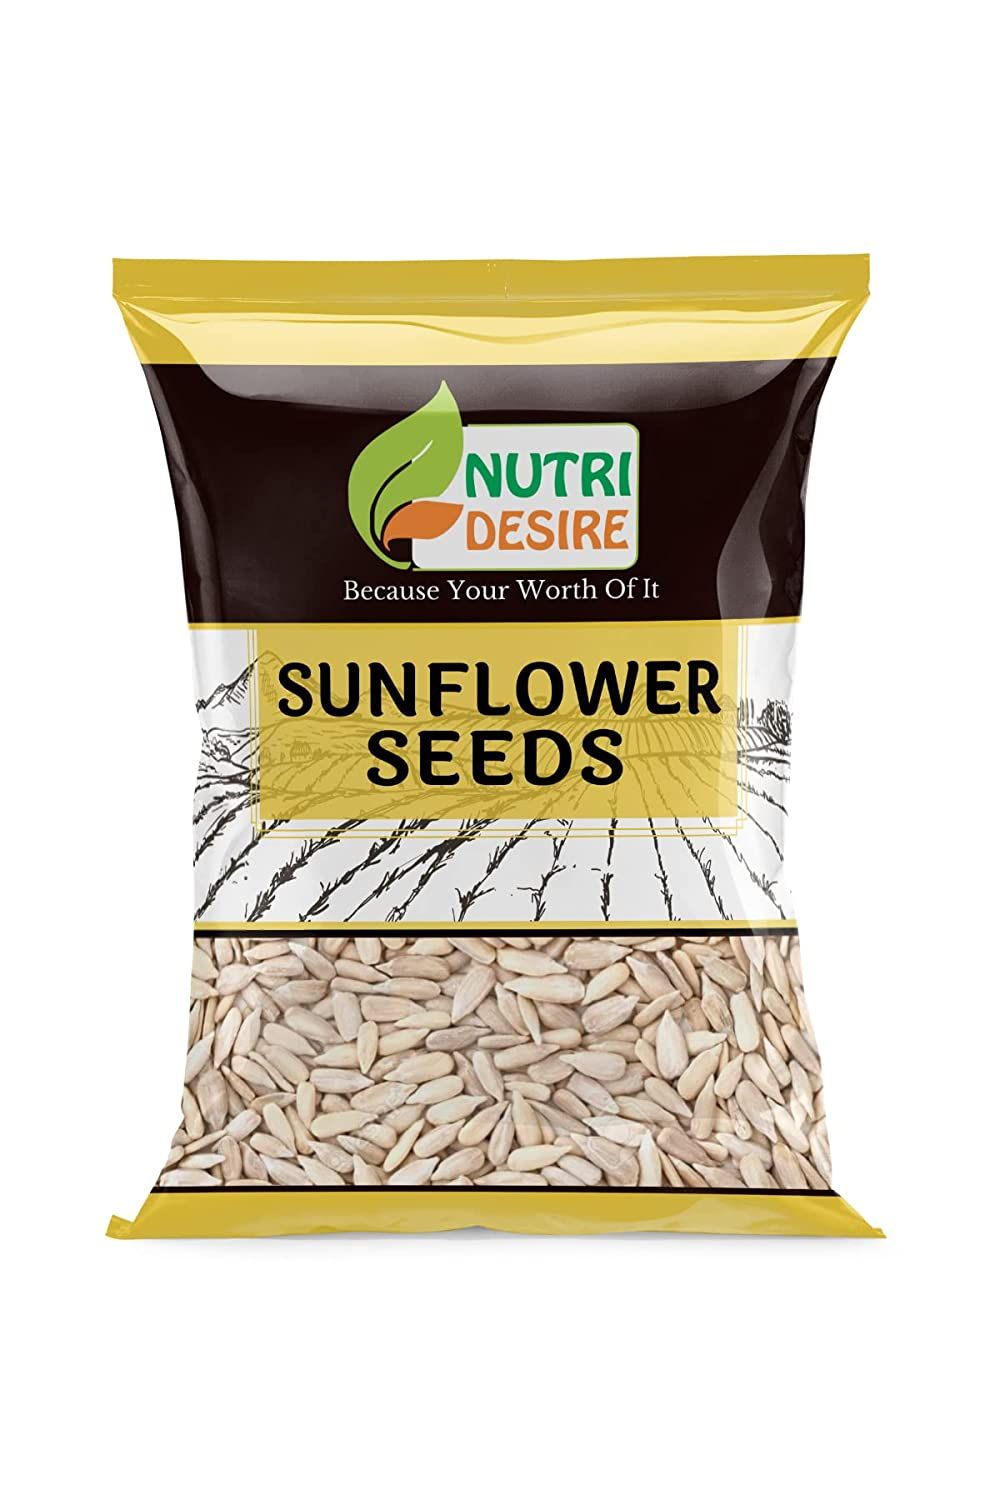 Nutri Desire Sunflower Seed Image